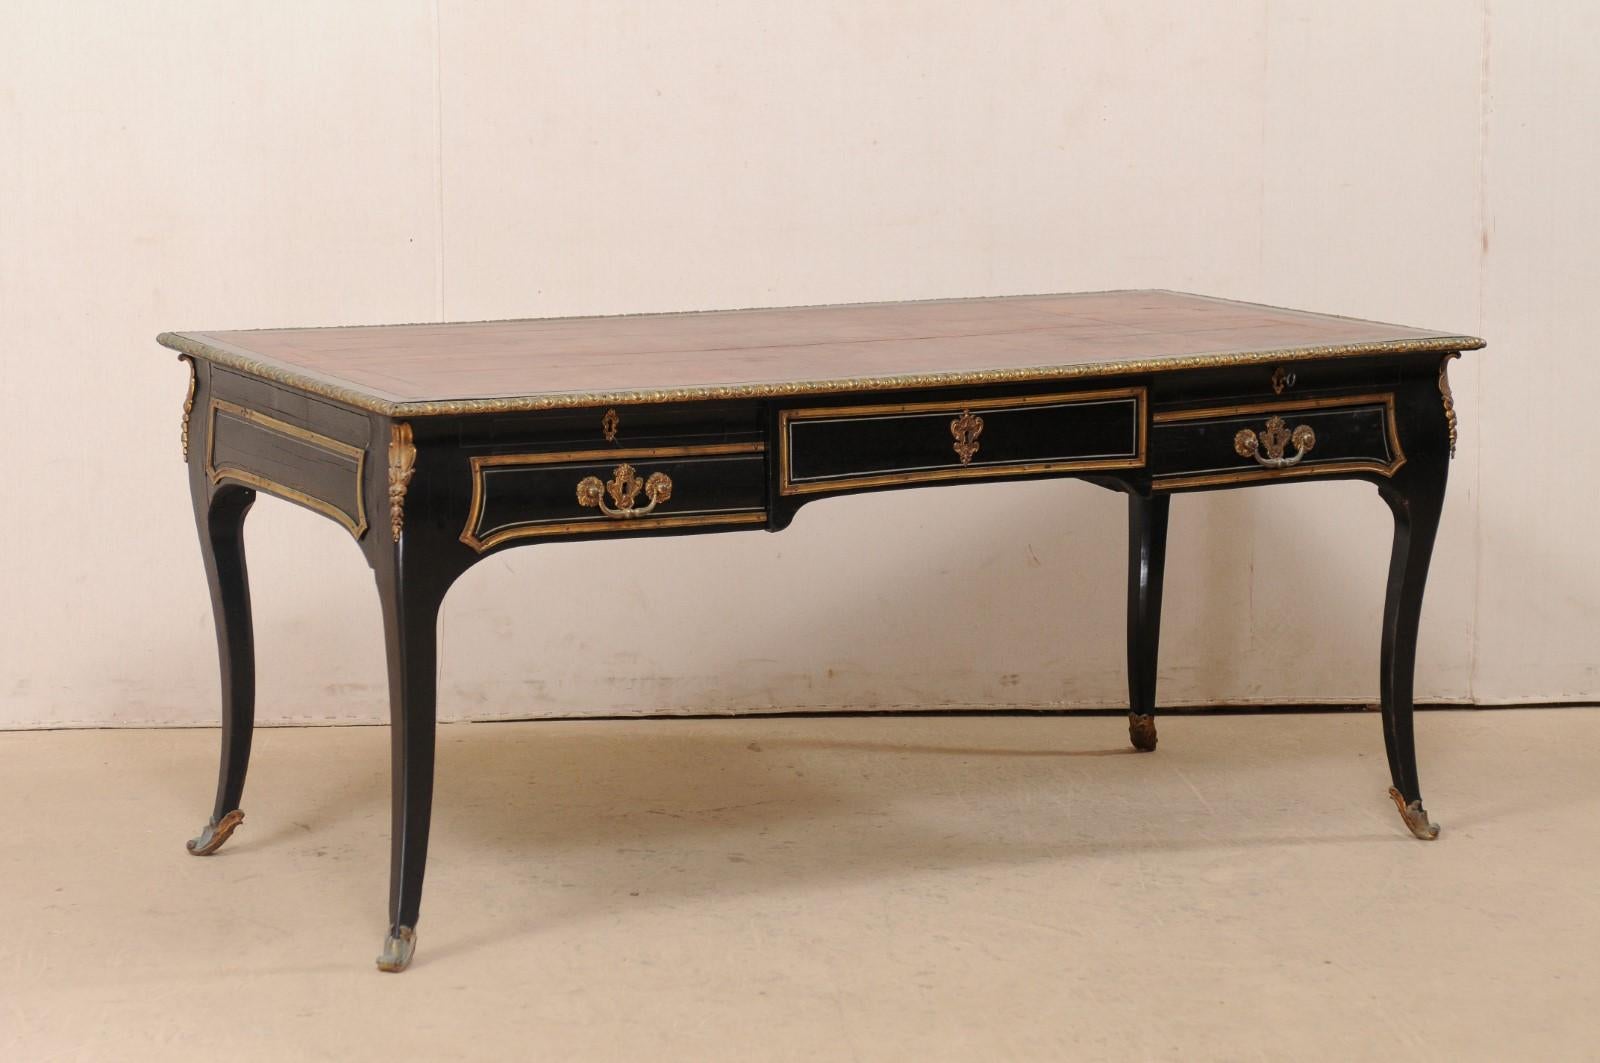 Bureau français de style Louis XV, avec tablette en cuir, du 19ème siècle. Cette table ancienne de France a été conçue dans le style Louis XV avec un plateau équipé d'un écritoire en cuir et un bord supérieur orné d'une bordure sculptée en forme